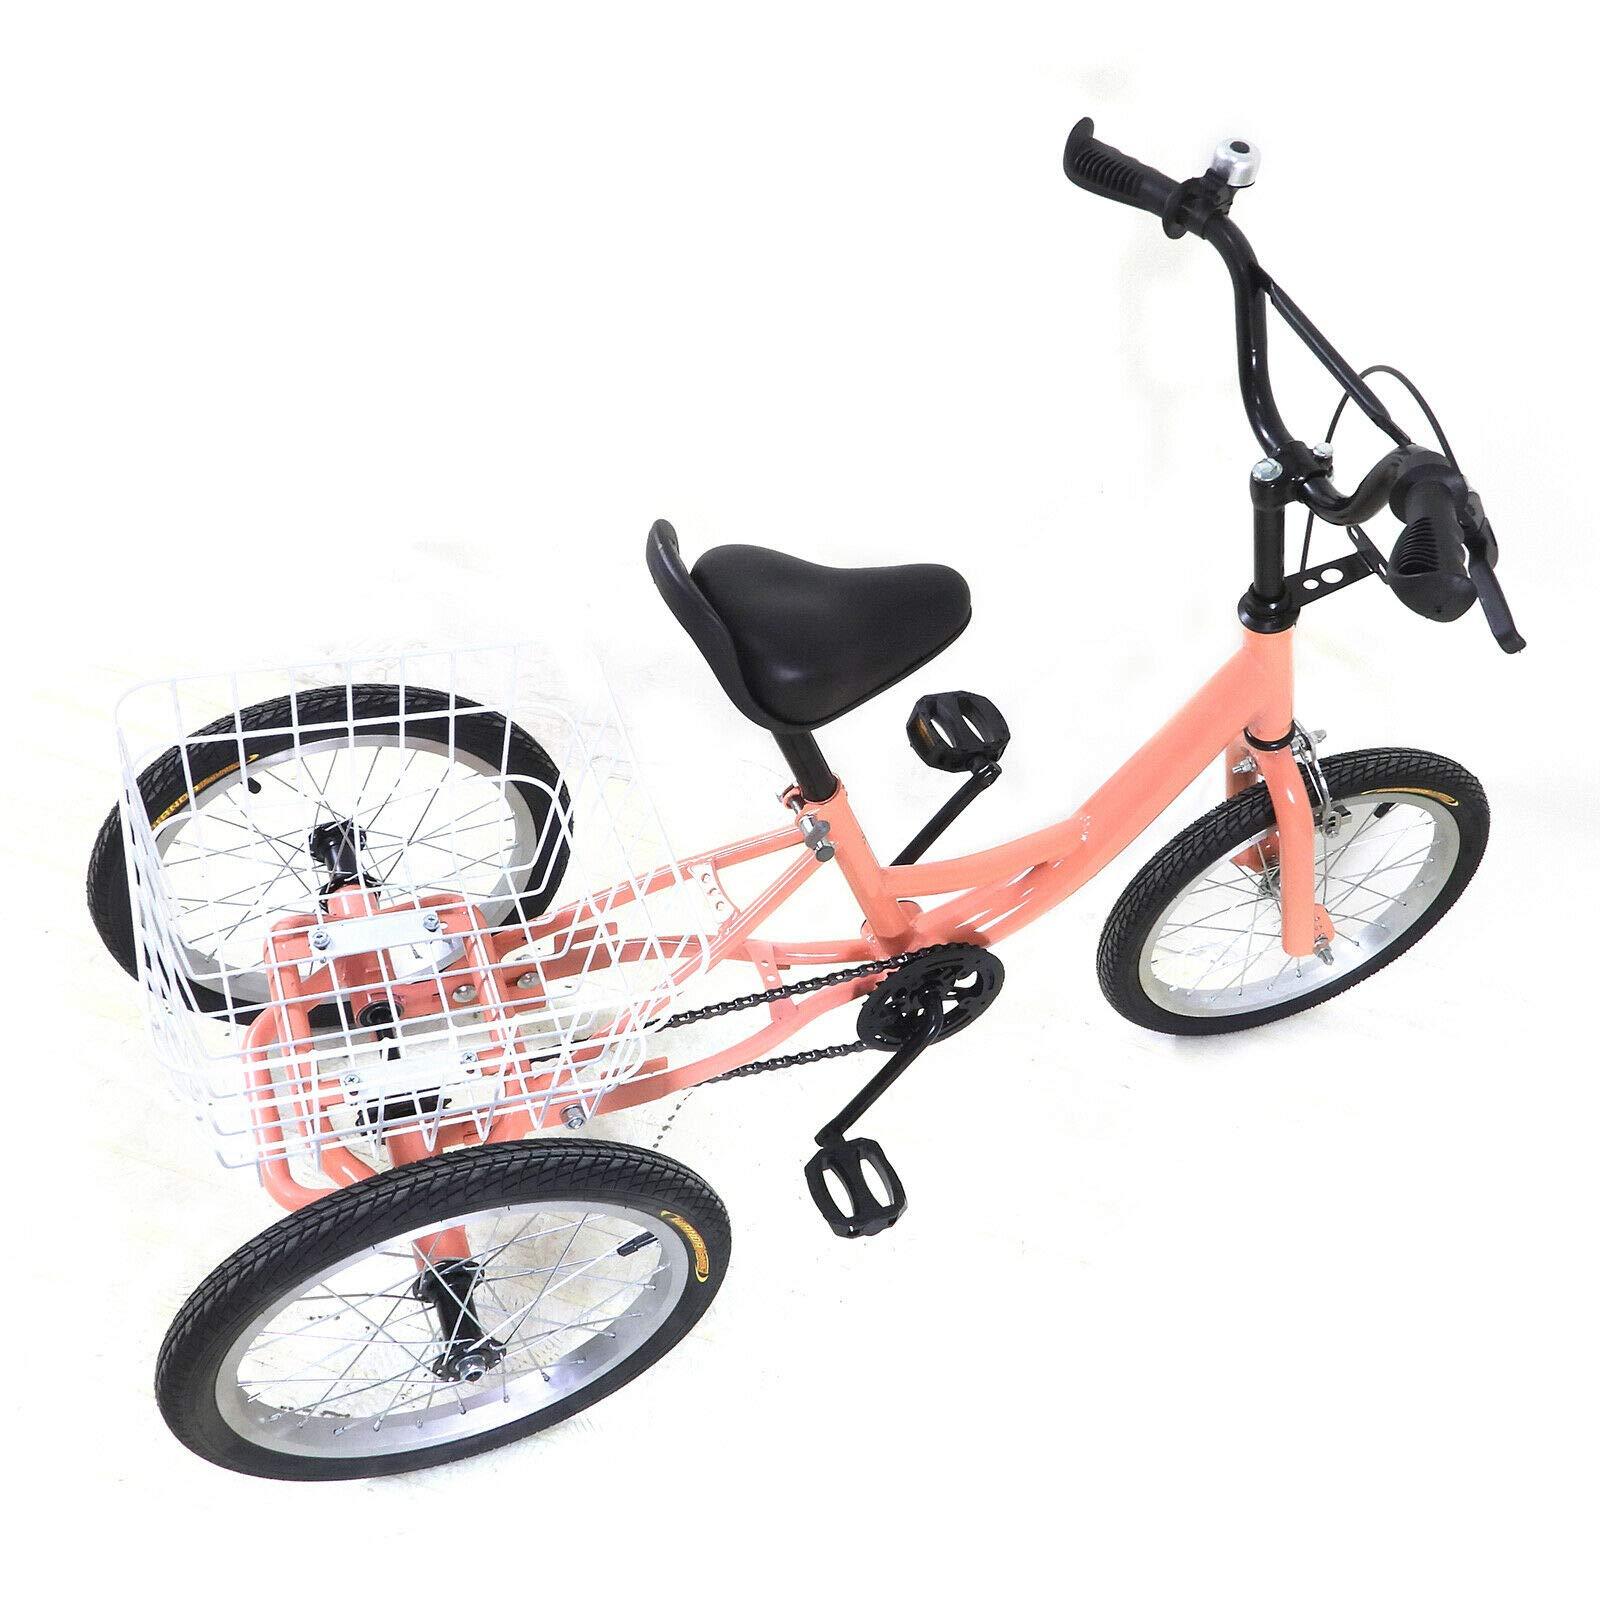 Triciclo per bambini da 16 pollici - Triciclo per bambini, bici a 3 ruote con cestino 